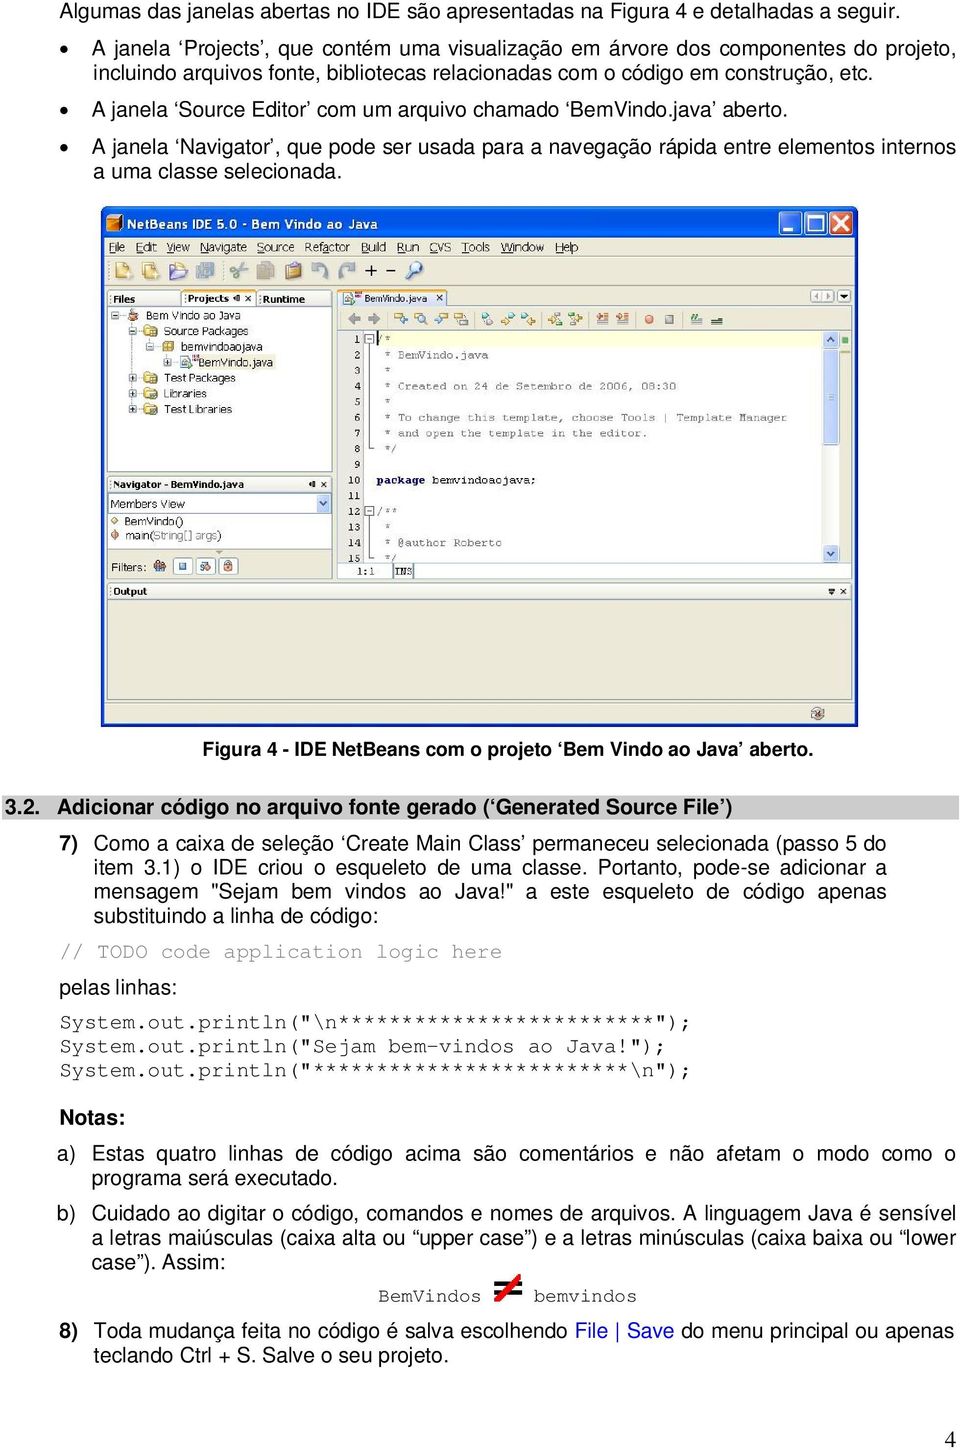 A janela Source Editor com um arquivo chamado BemVindo.java aberto. A janela Navigator, que pode ser usada para a navegação rápida entre elementos internos a uma classe selecionada.